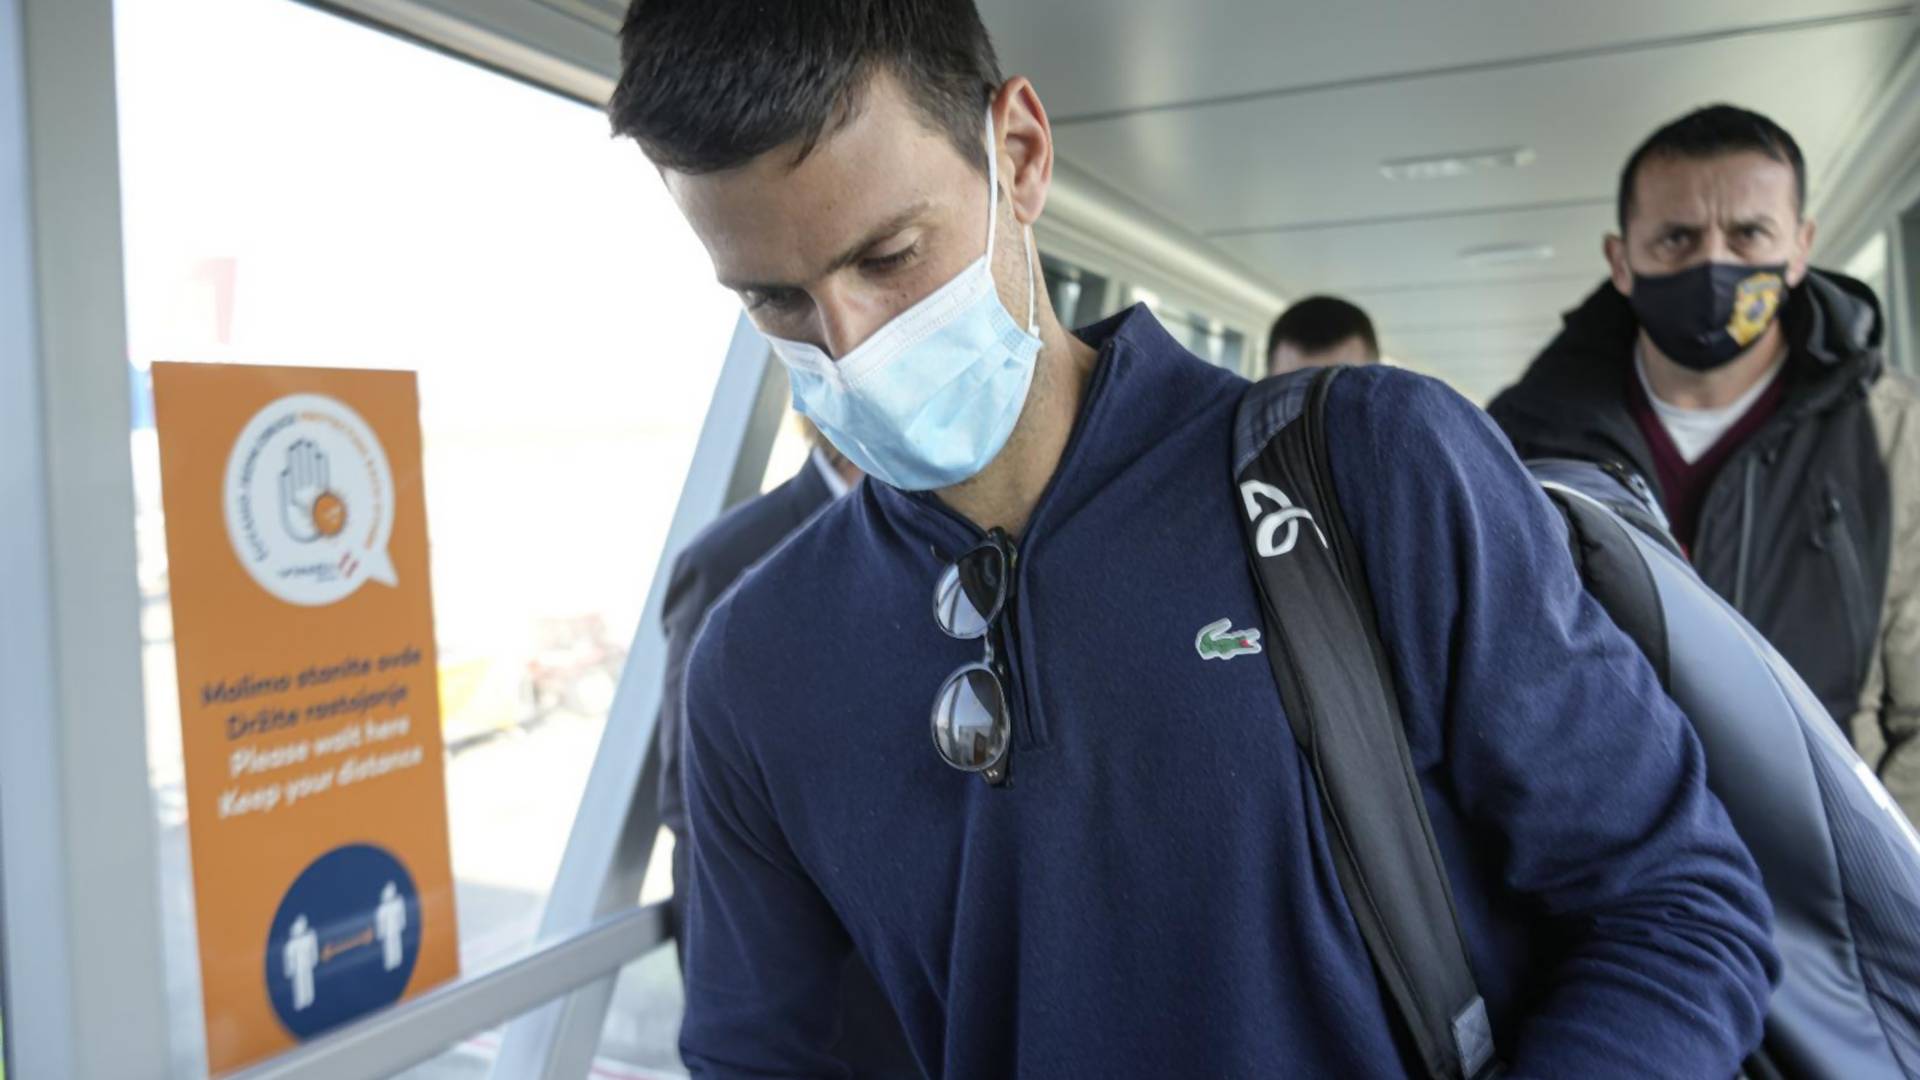 Novinari i navijači čekali Novaka na aerodromu u Beogradu, on ih sve izbegao i otišao kući